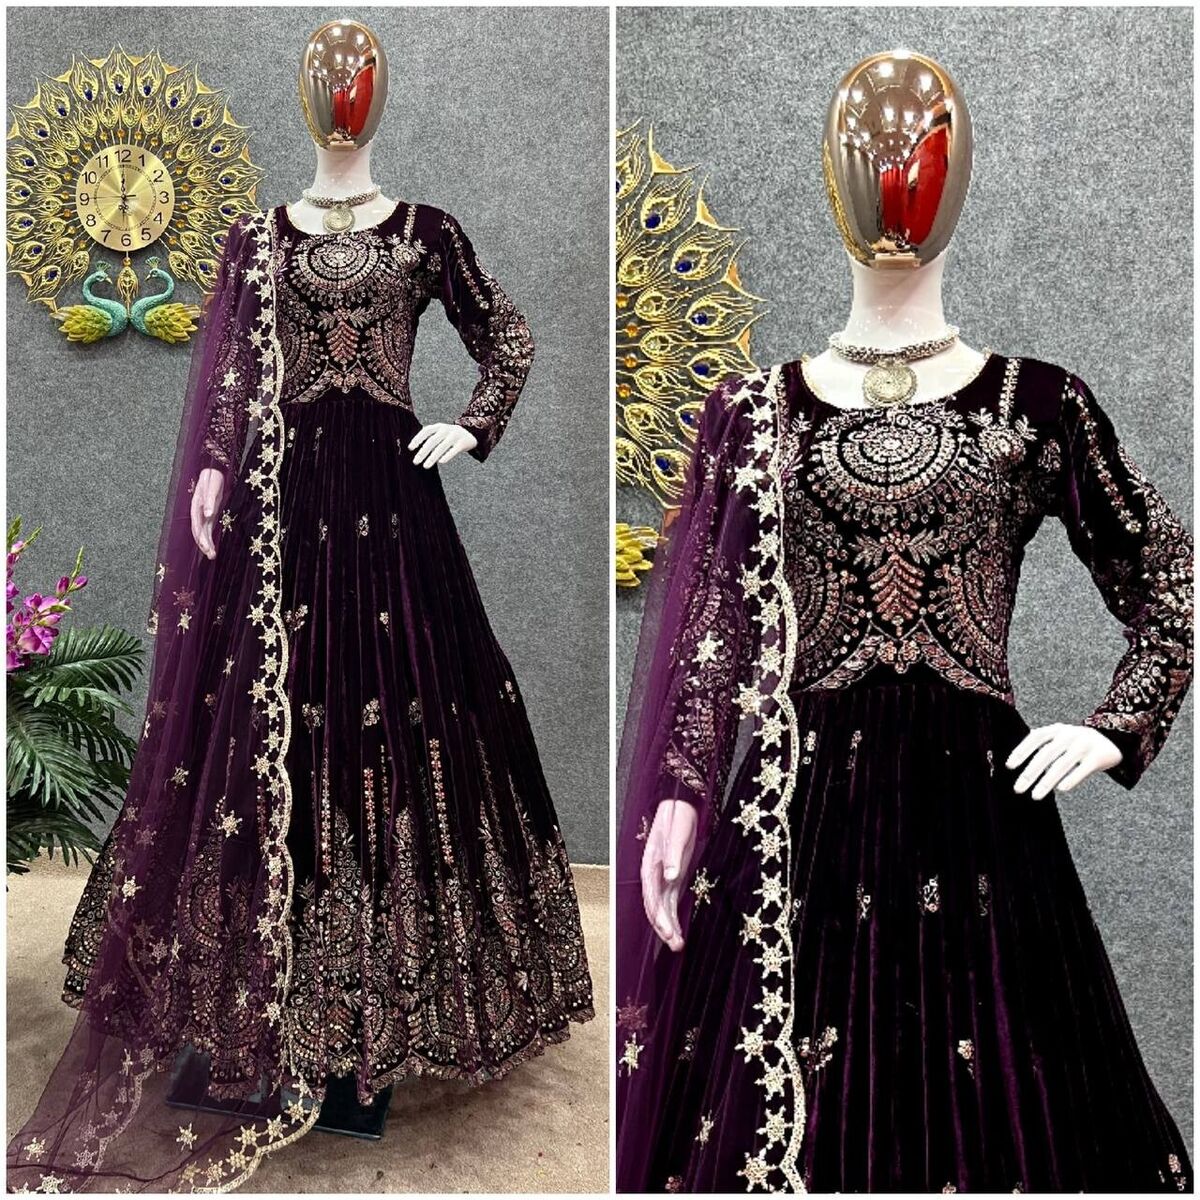 FabricAnarkali - Velvet Dupatta - Organza | Velvet dresses outfit, Velvet  dress designs, Dress indian style